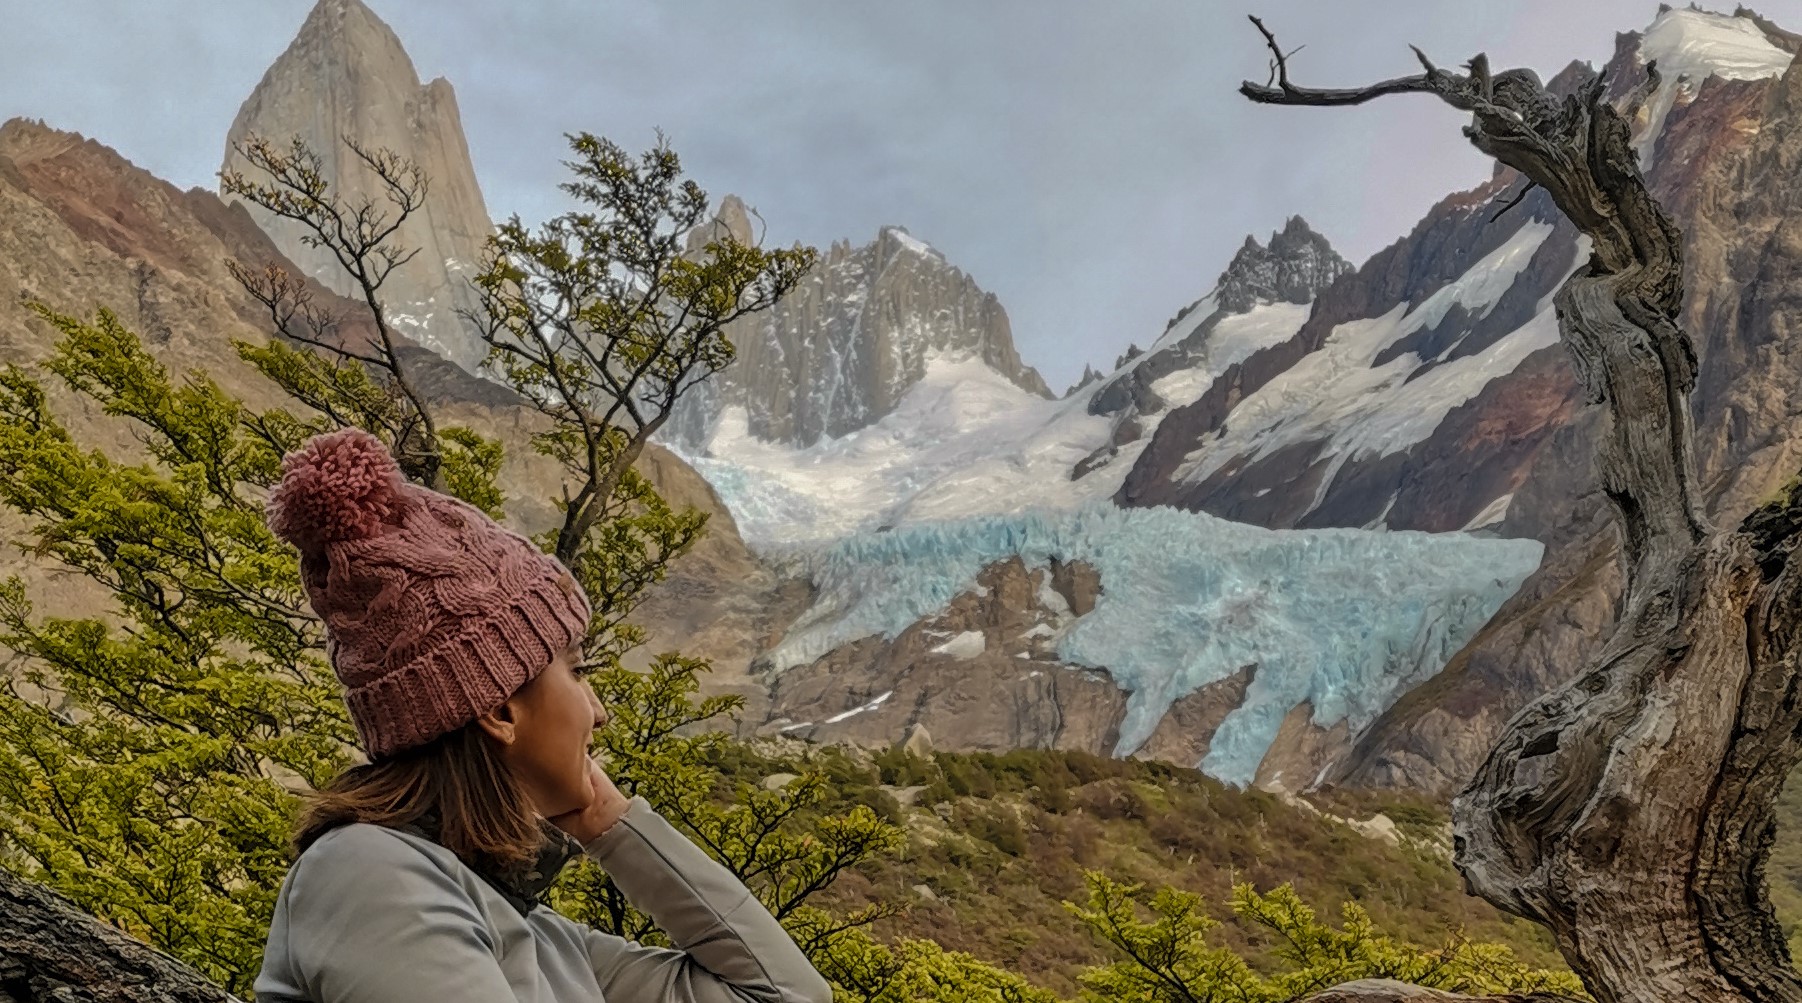 Glaciares, montañas nevadas y cascadas escondidas, las maravillas a las que conducen los senderos de El Chaltén.  Foto: Eugenia Llanez.